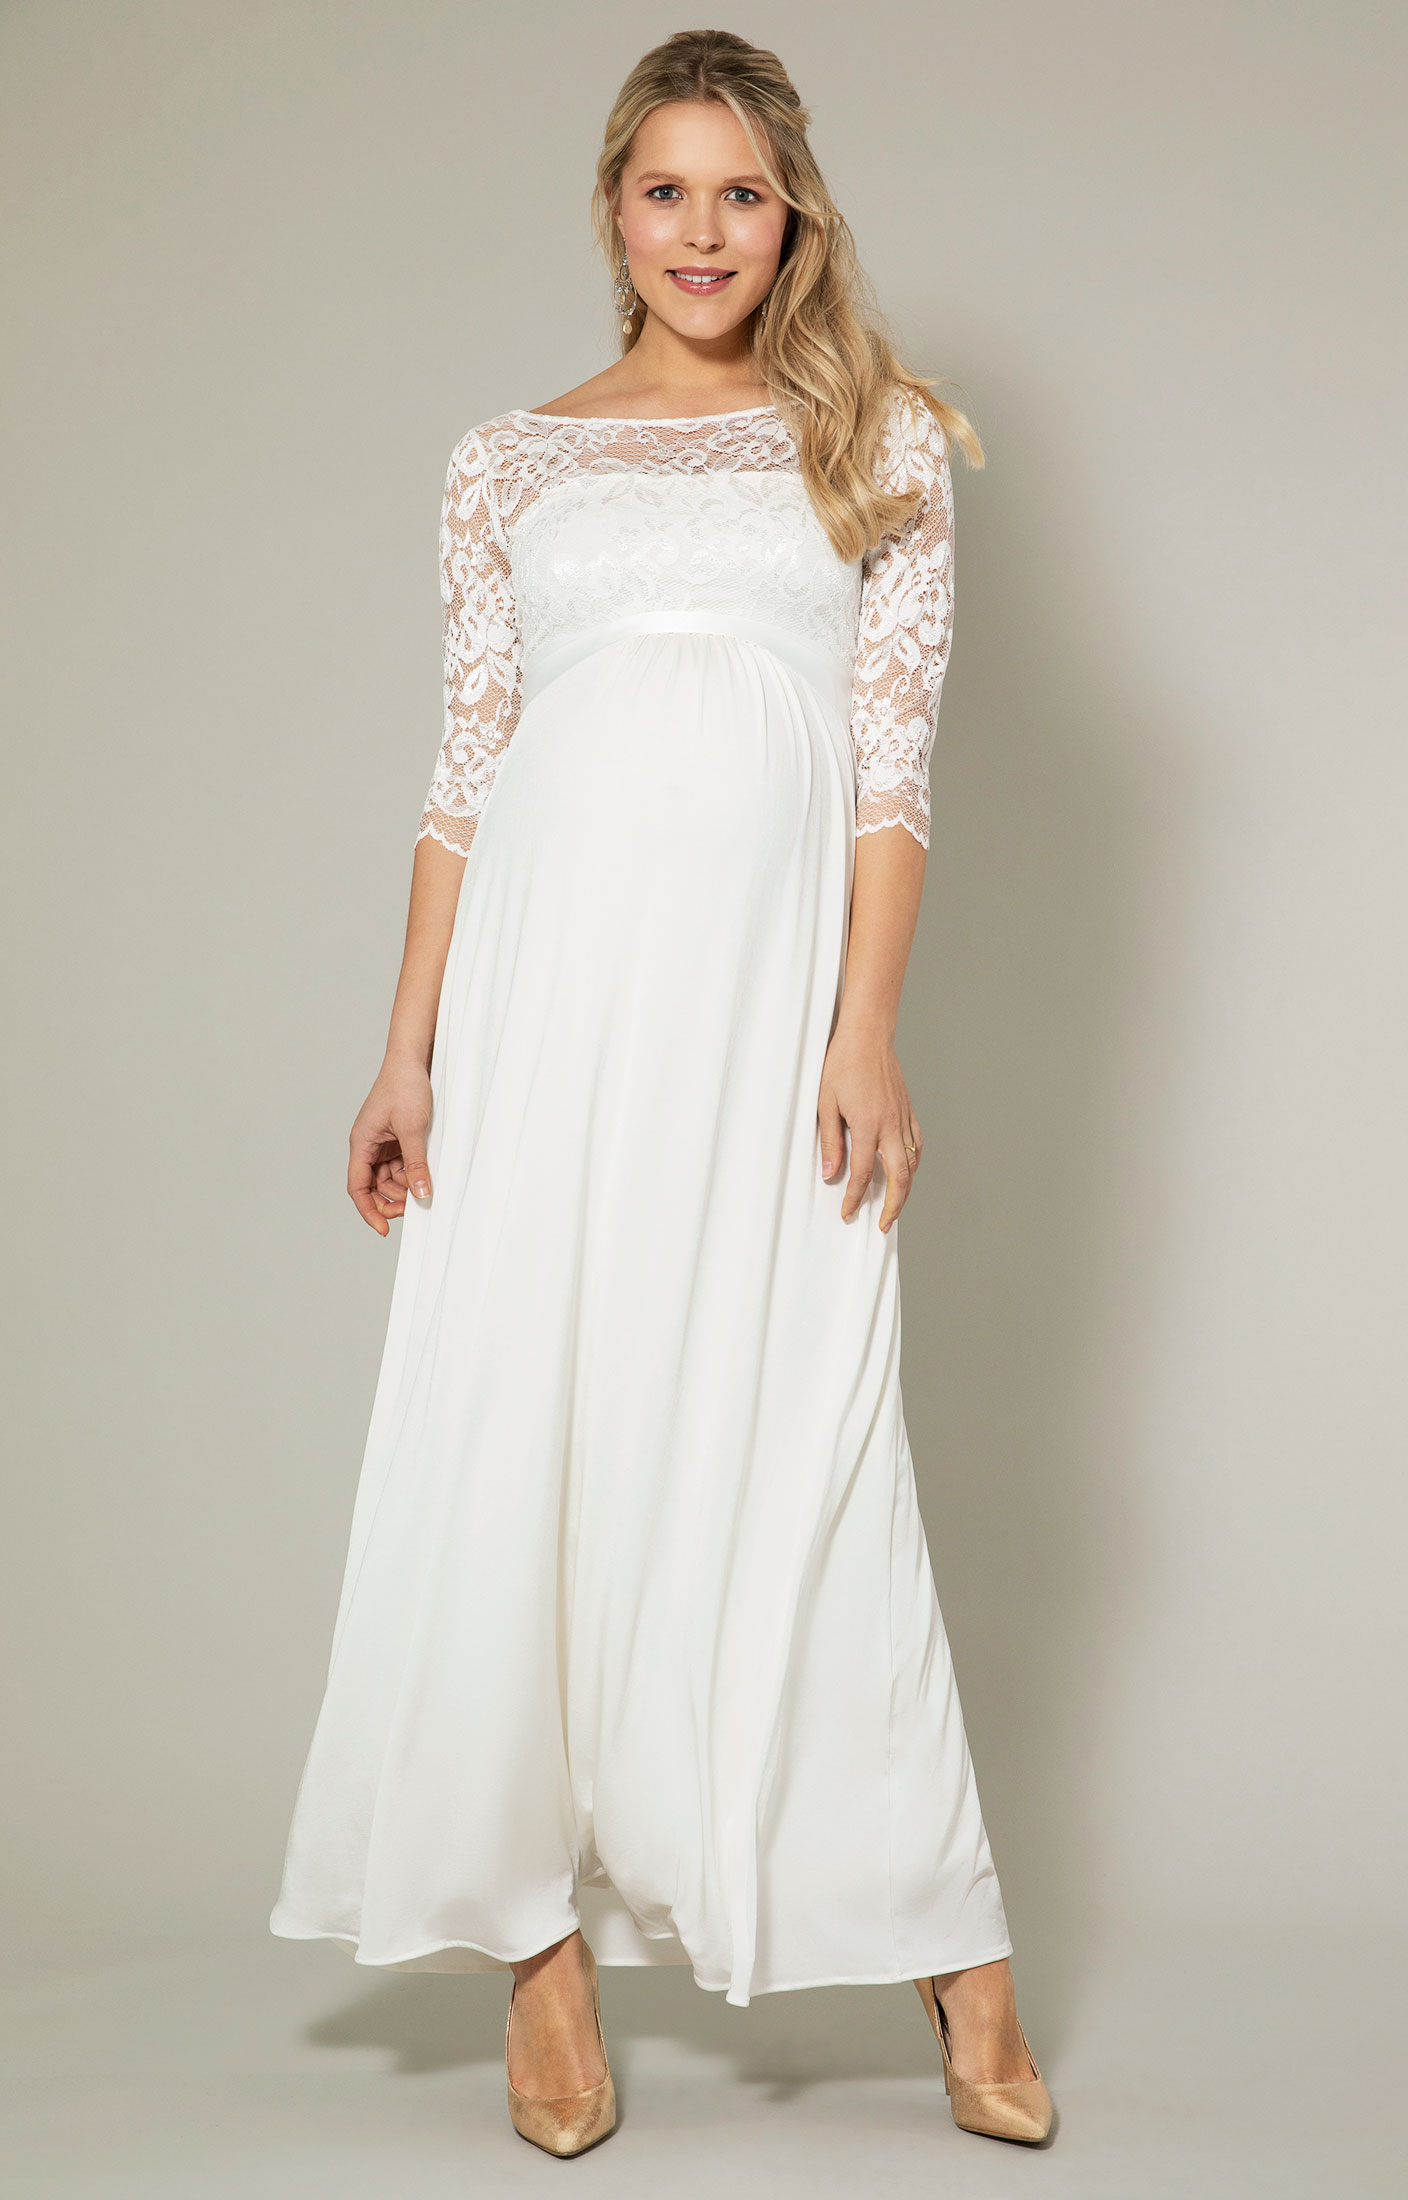 Olivia Maternity Wedding Gown (Ivory White) - Maternity Wedding Dresses ...